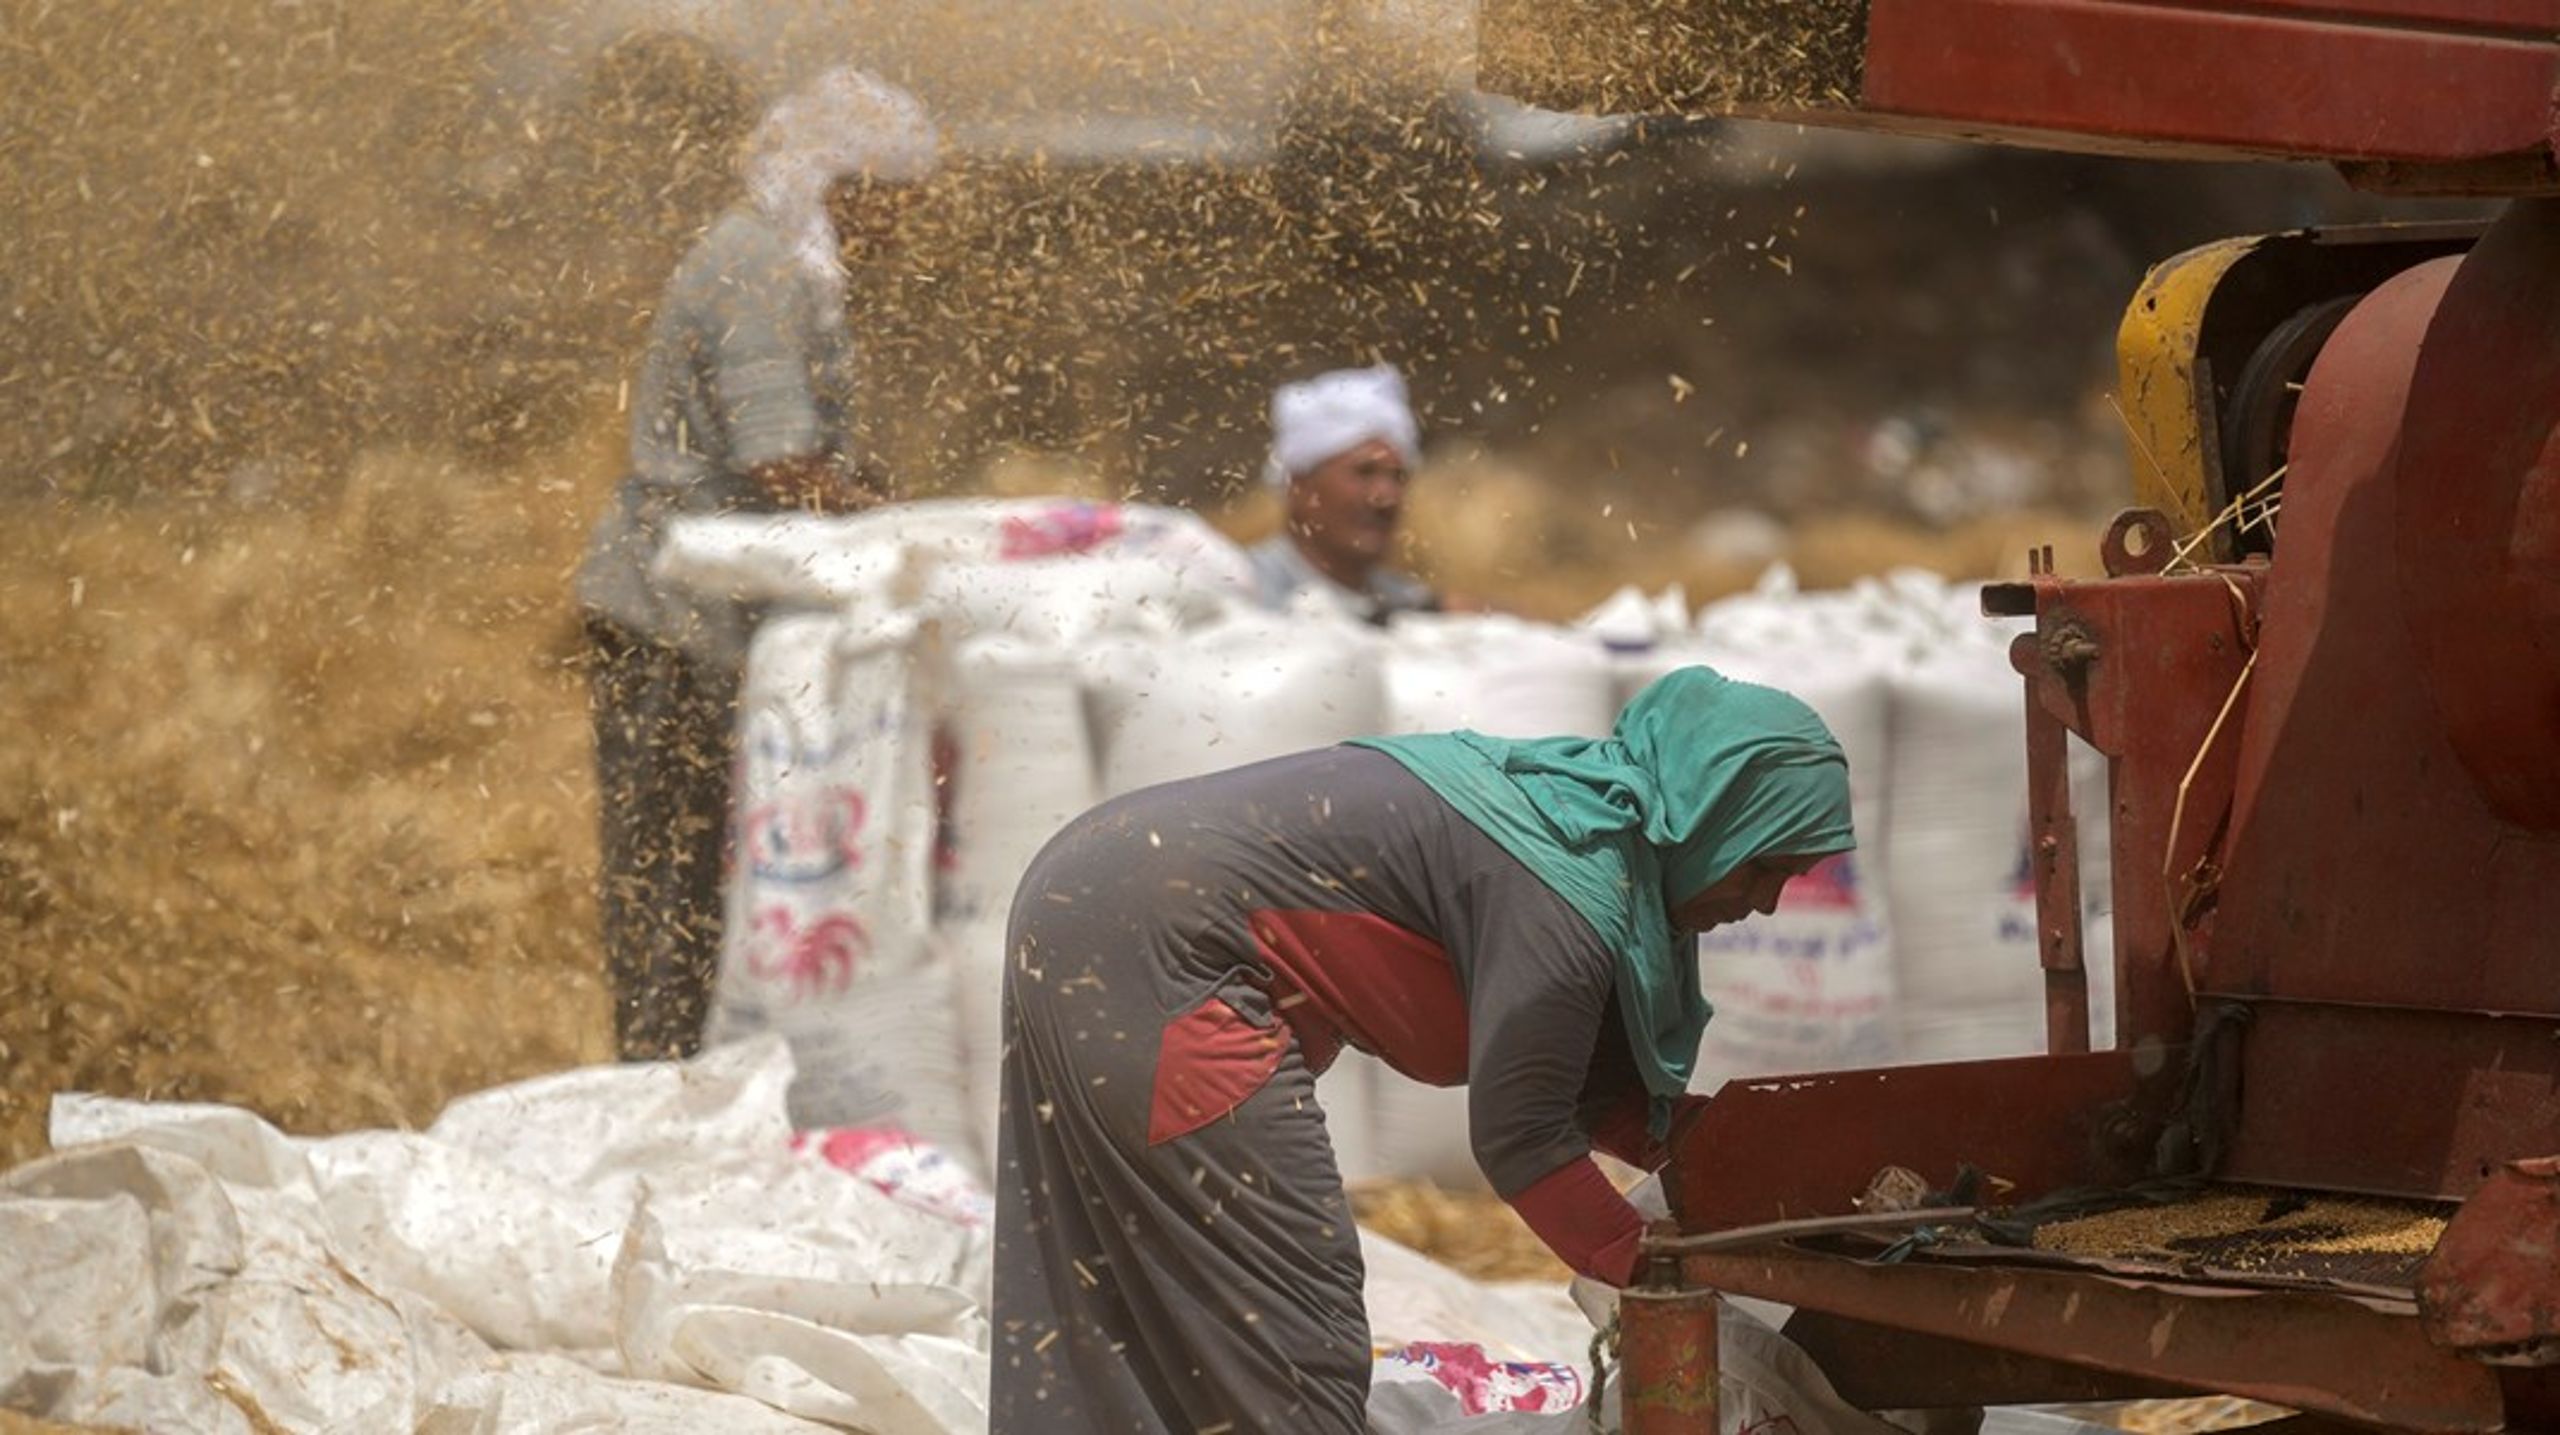 Landbruget i Afrika er fortsat præget af mange småbønder, hvor op mod 70 procent af arbejdsstyrken er udgjort af kvinder, som oftest er dårligere betalt end mændene, og som sjældent ejer den jord, de dyrker, skriver Peder Tuborgh og Merete Juhl.